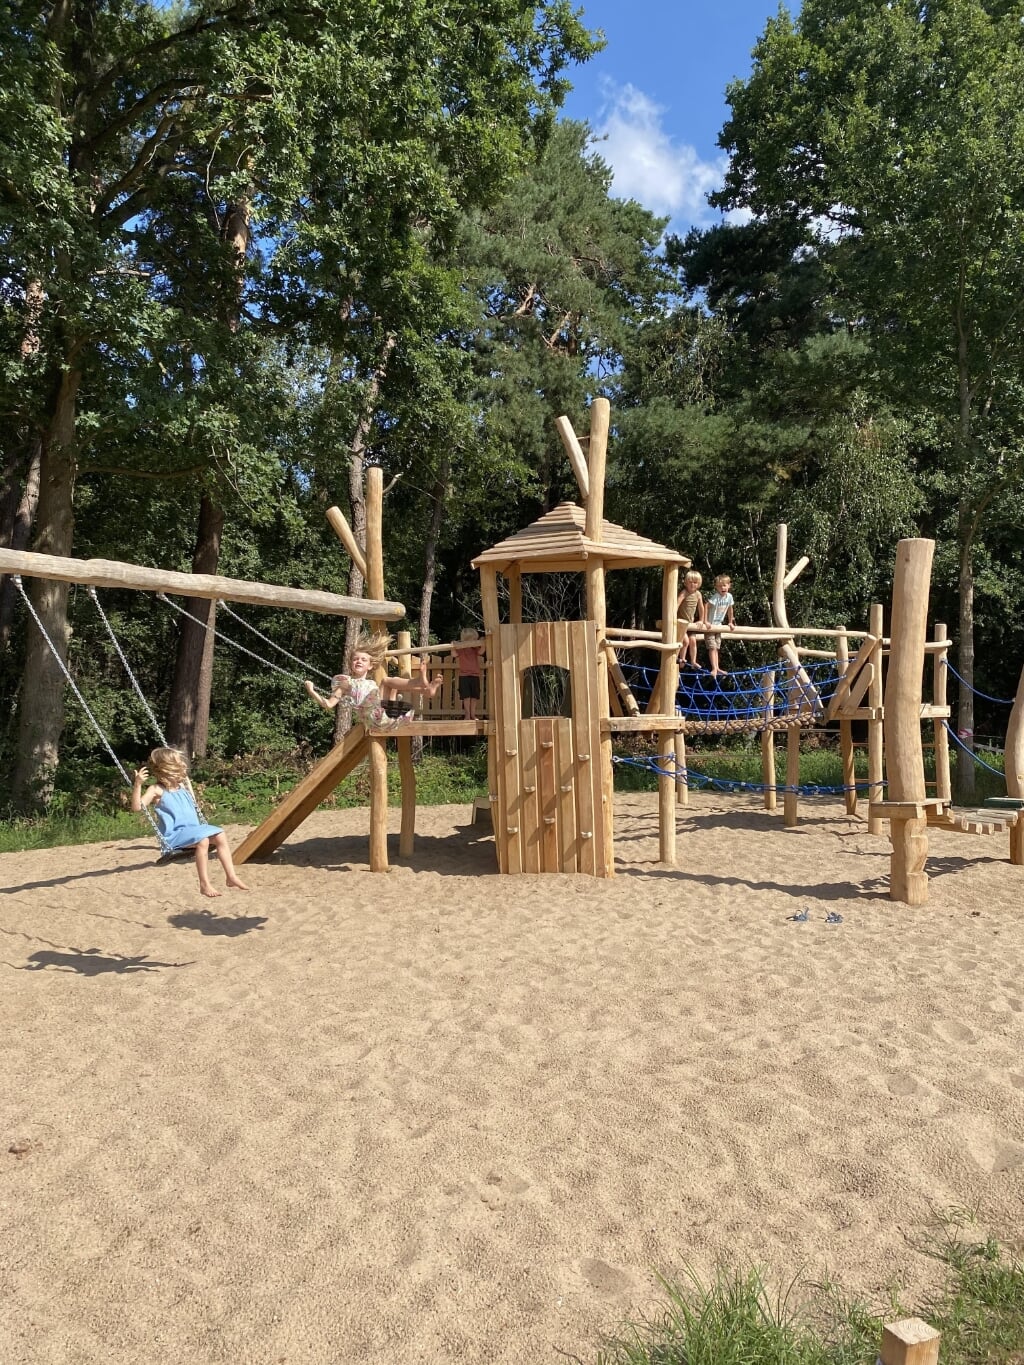 De speeltuin in Sparrenlaene sluit aan bij de groene omgeving doordat het grote toestel van hout is en natuurlijk vormen heeft. De opening van de speeltuin is zaterdag. (Foto: eigen collectie).